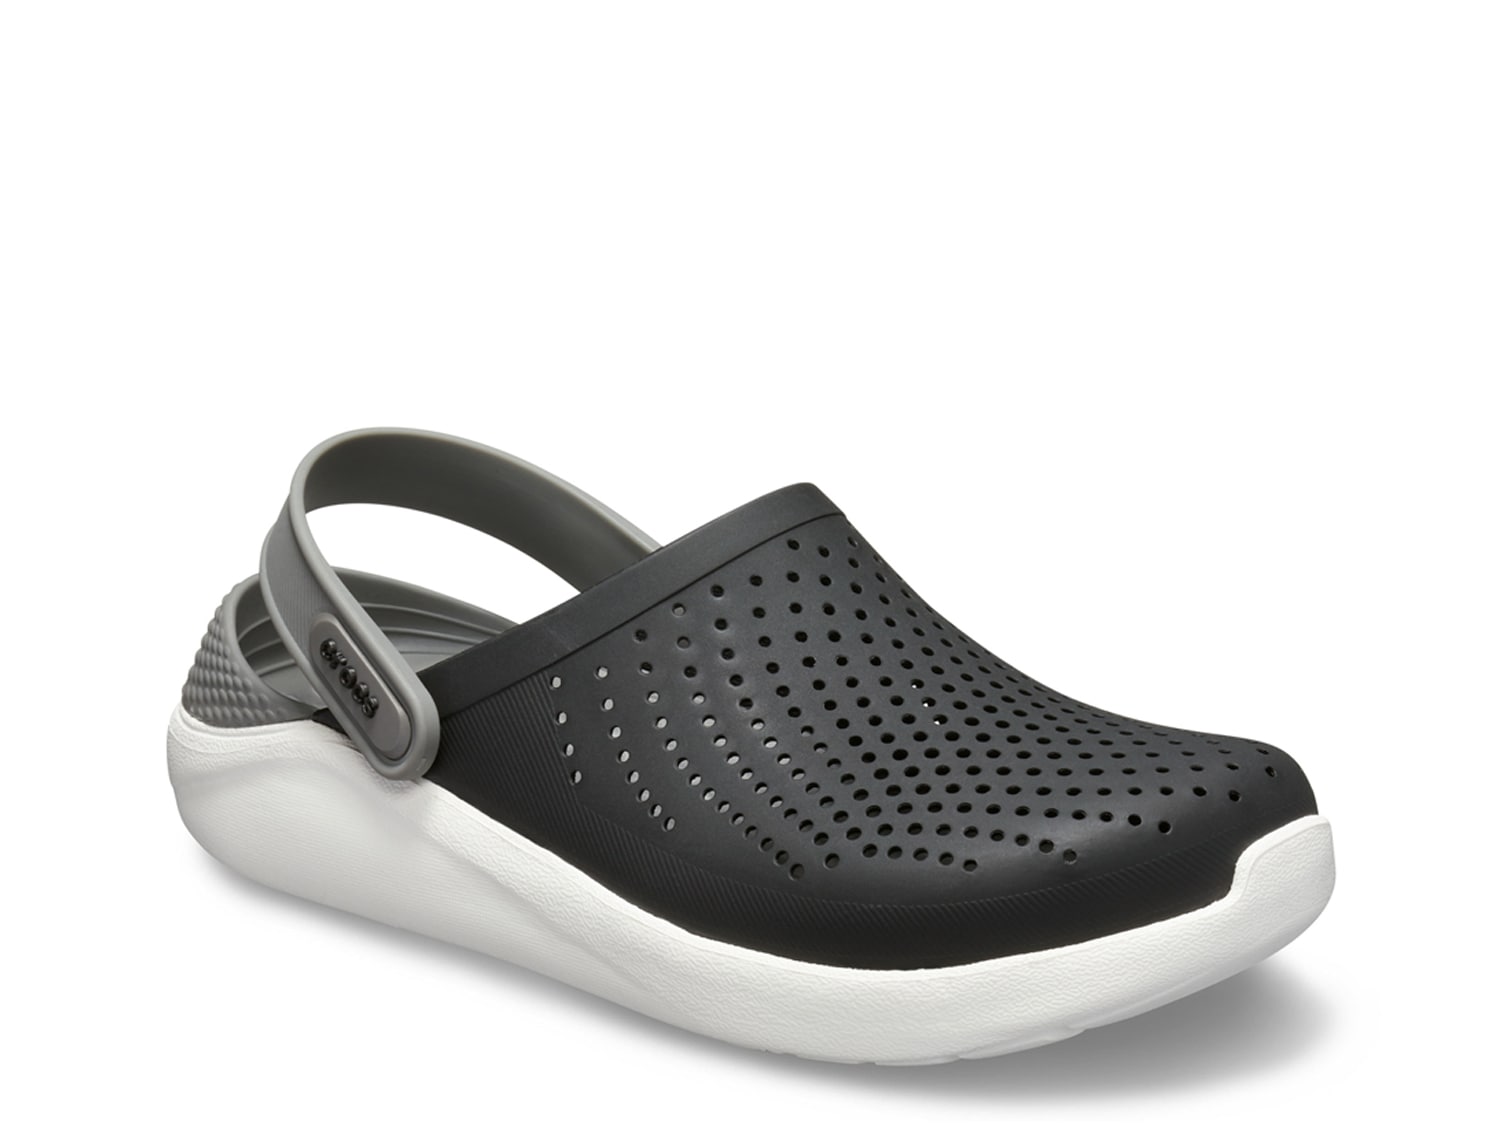 Men's Crocs Comfort Shoes | DSW